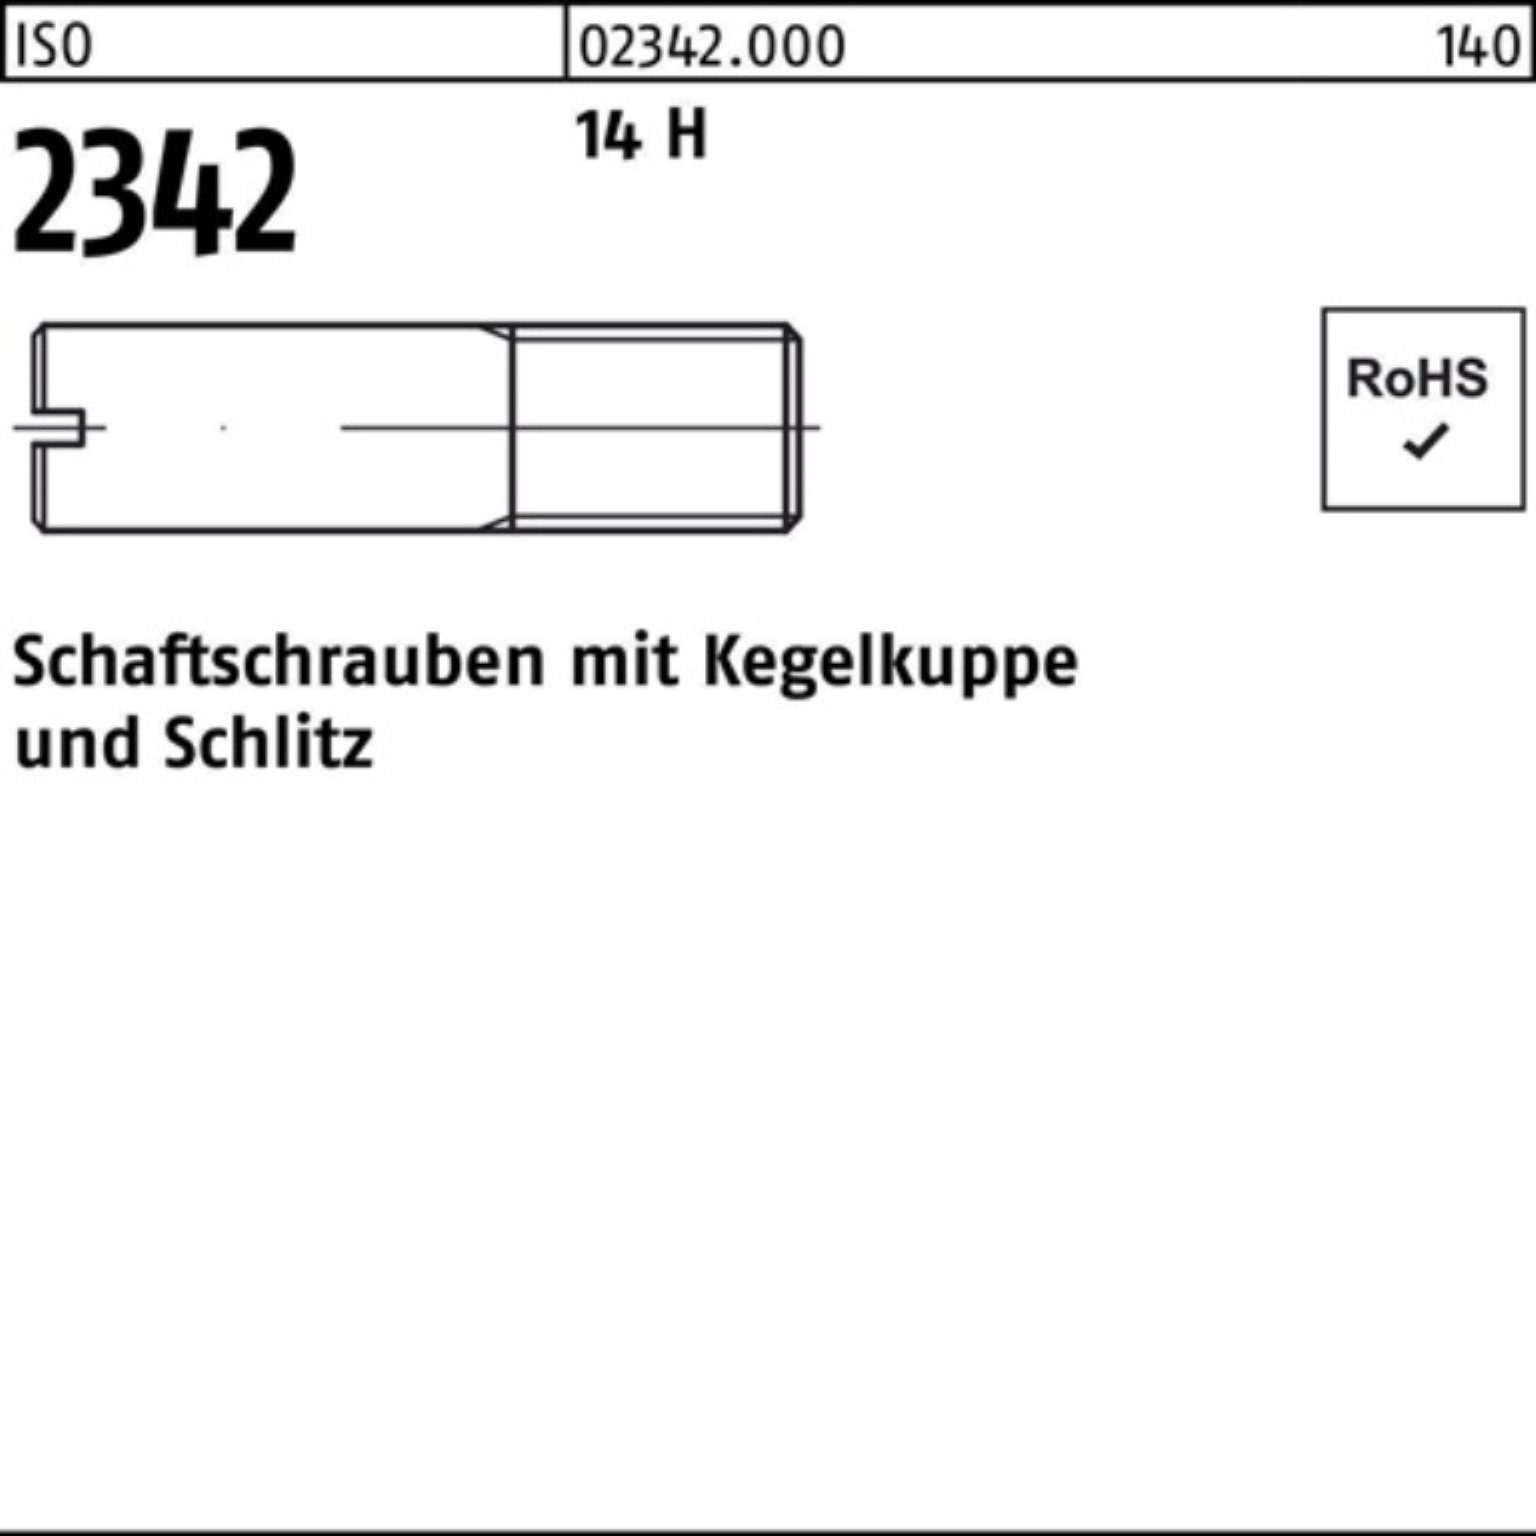 Reyher Schraube 100er Pack Schaftschraube ISO 2342 Kegelkuppe/Schlitz M3x 12 14 H 100